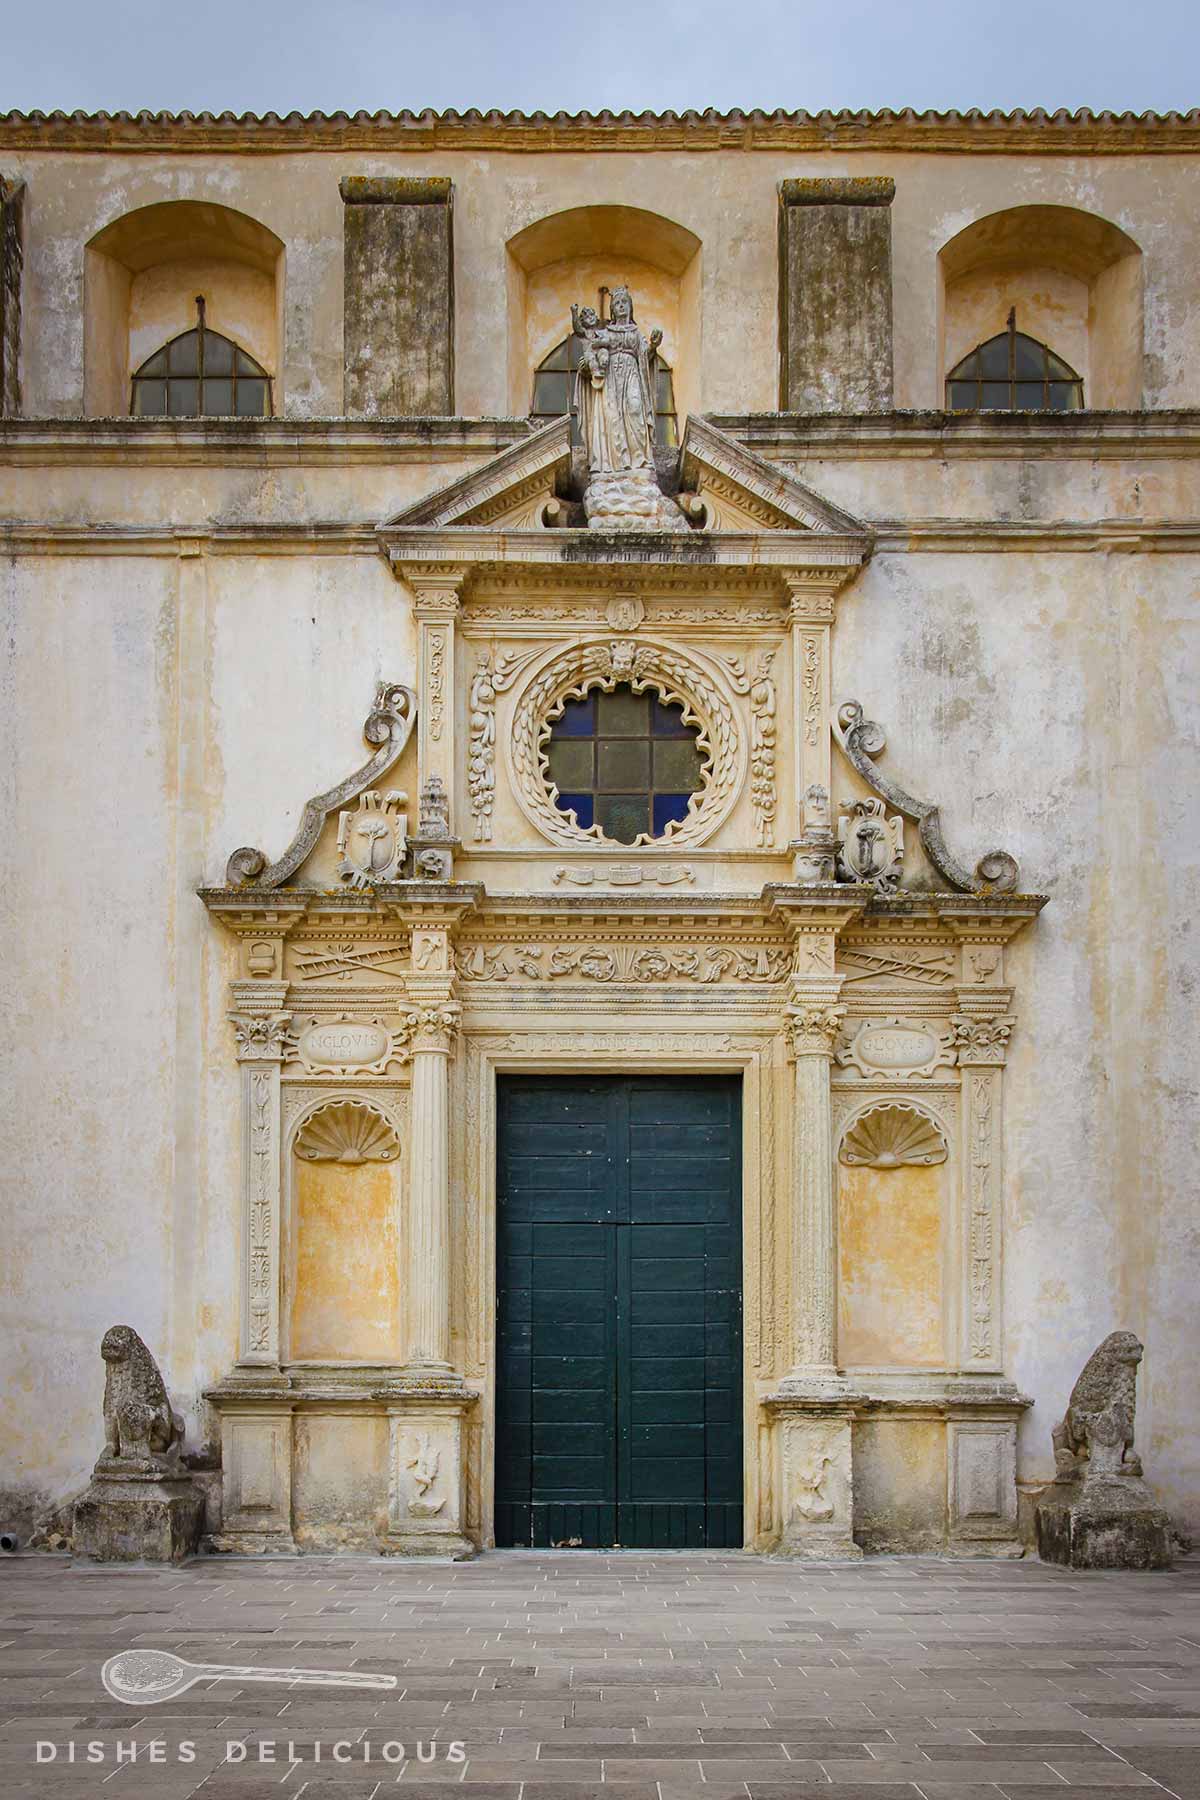 Schmuckvolles Portal der Basilica von Copertino mit verschlossenen Türen. Zwei Löwen aus Stein wachen jeweils links und rechts des Portals.